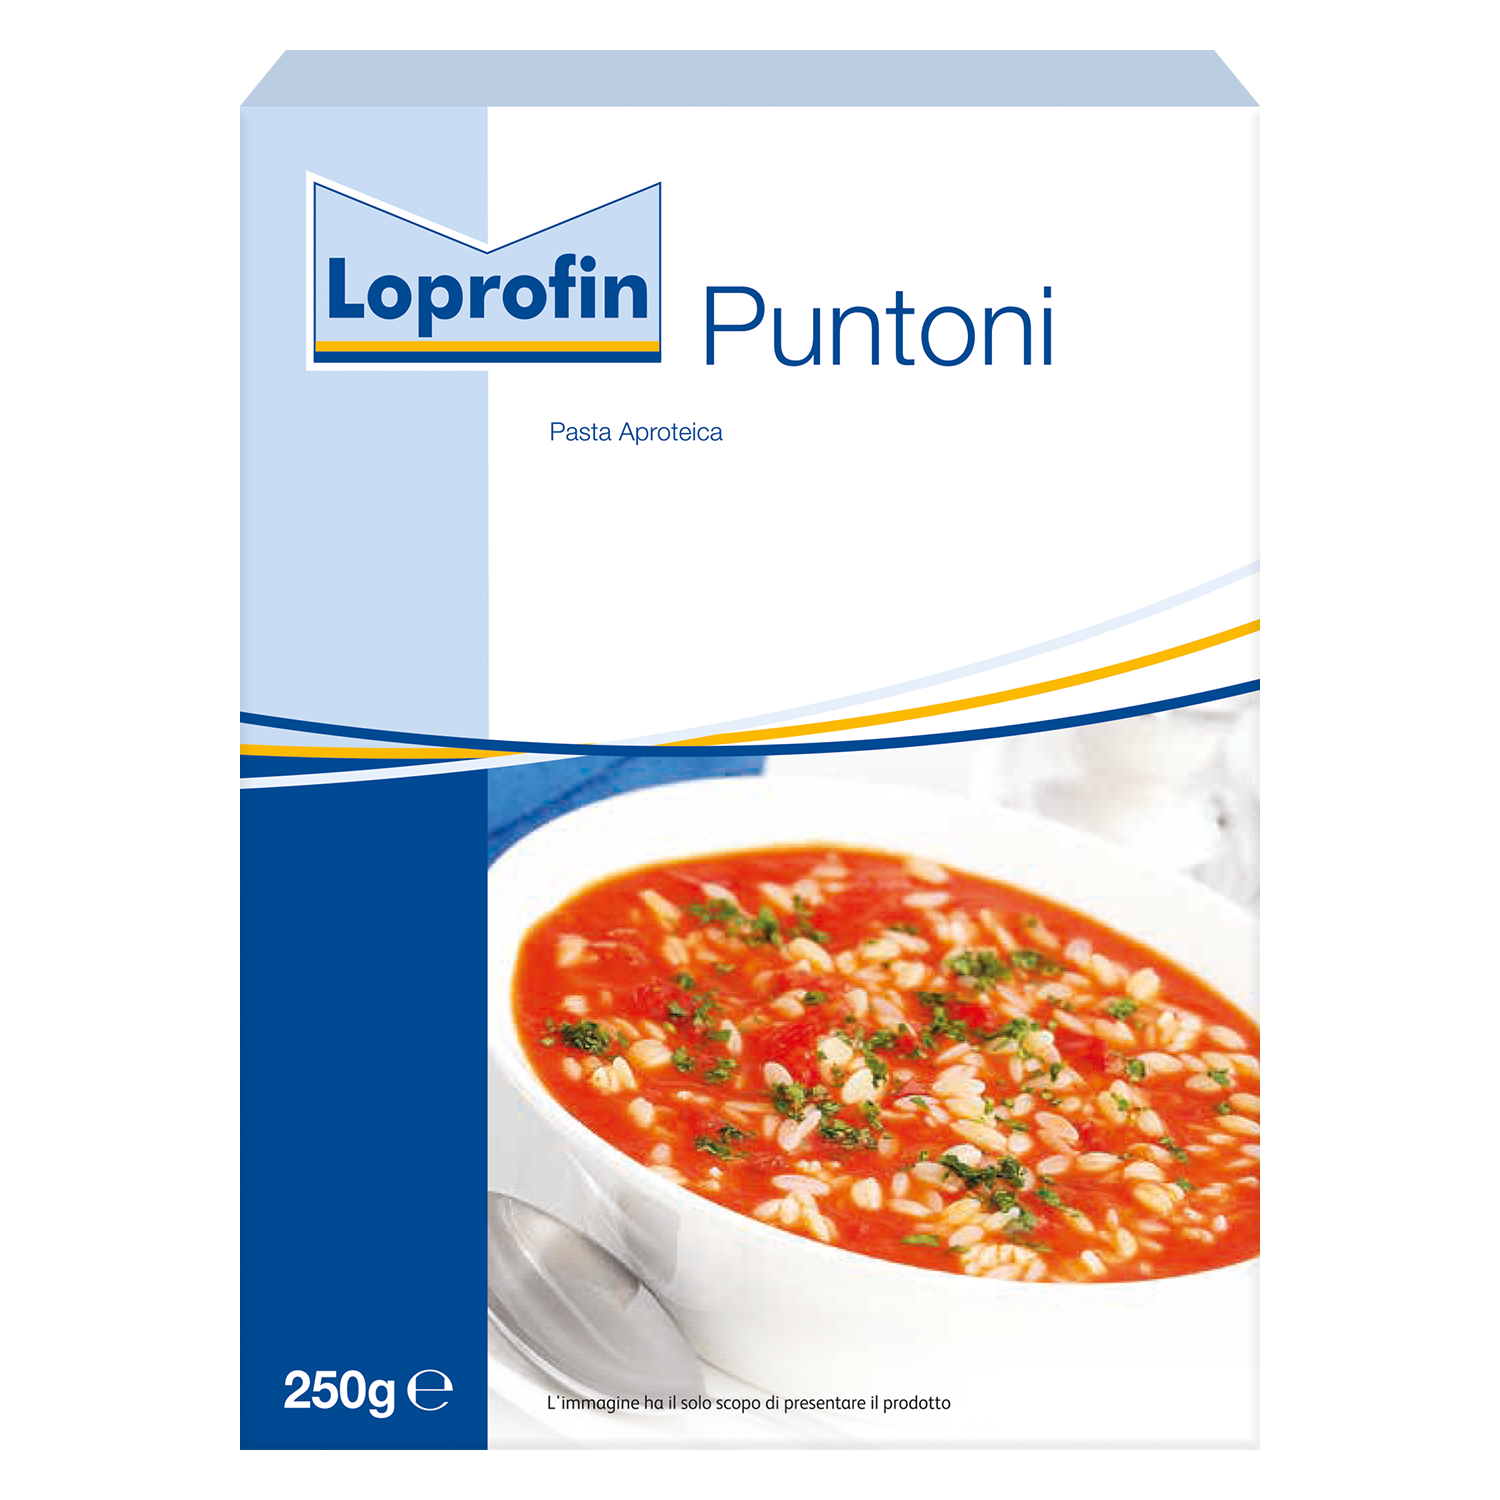 Loprofin Puntoni (250g)